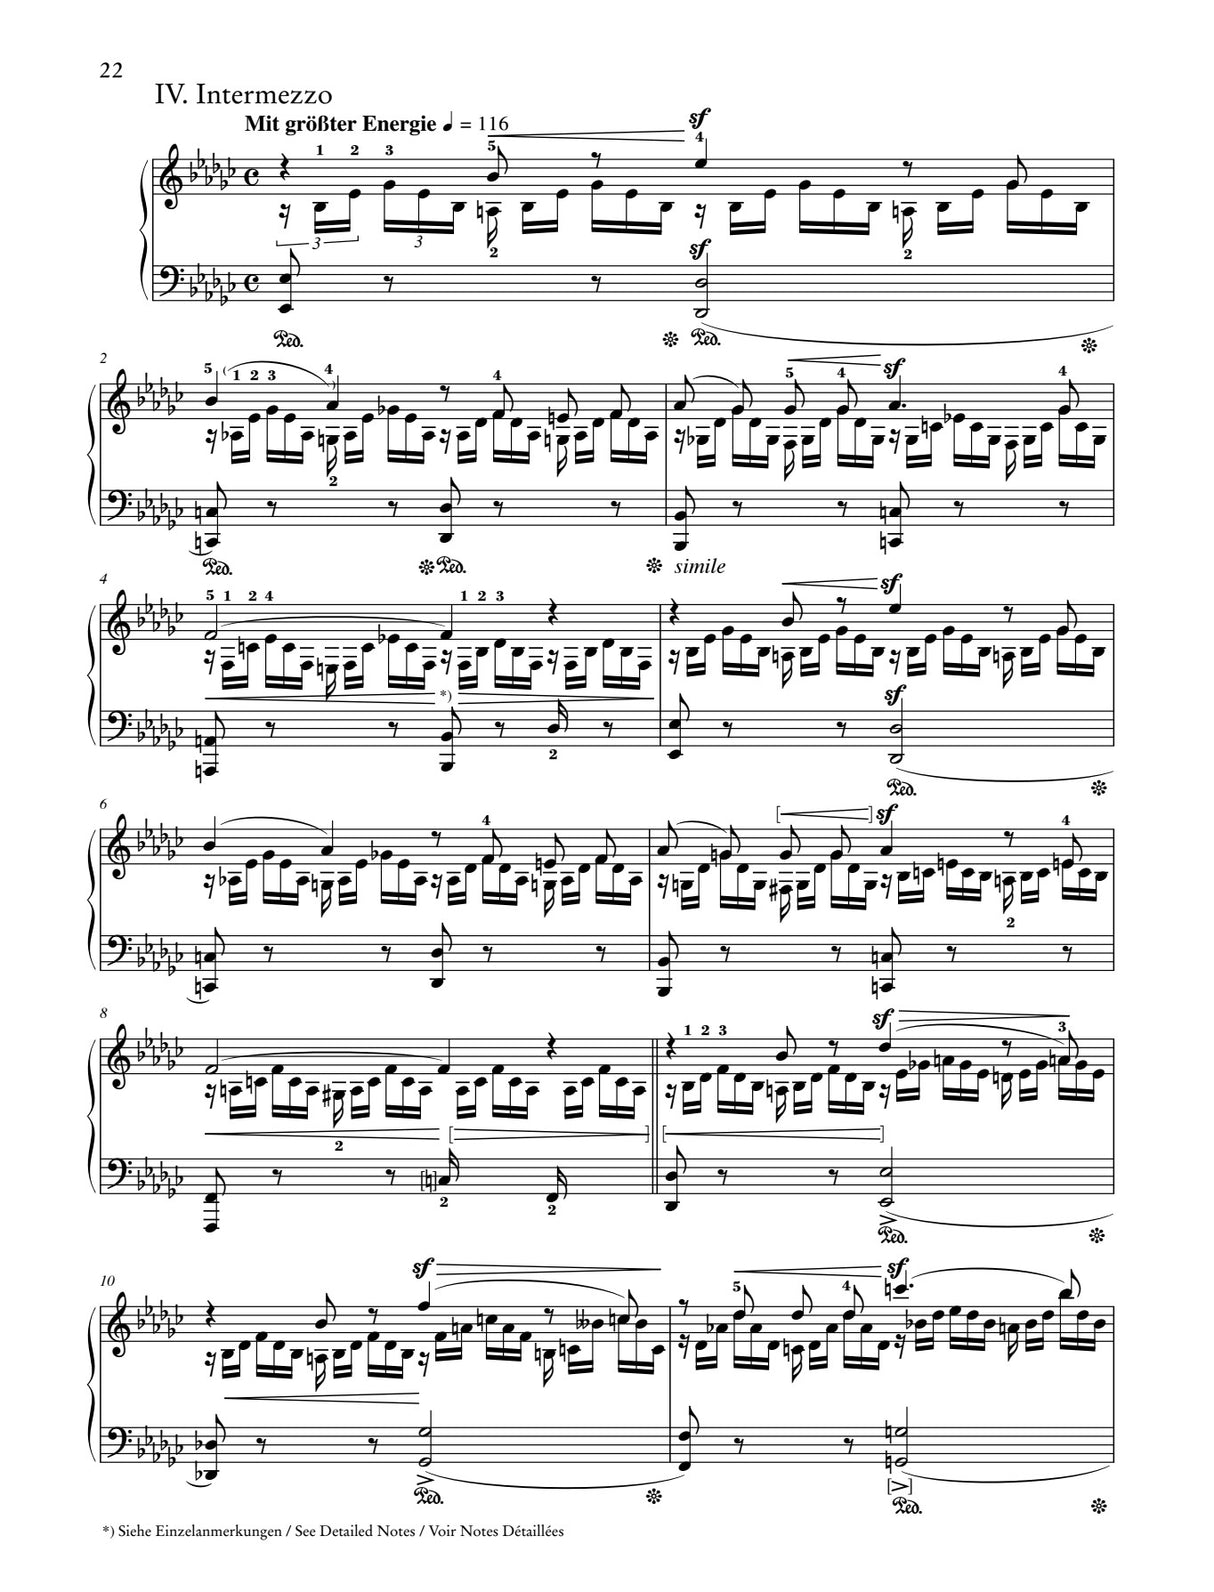 Schumann: Carnival of Vienna, Op. 26